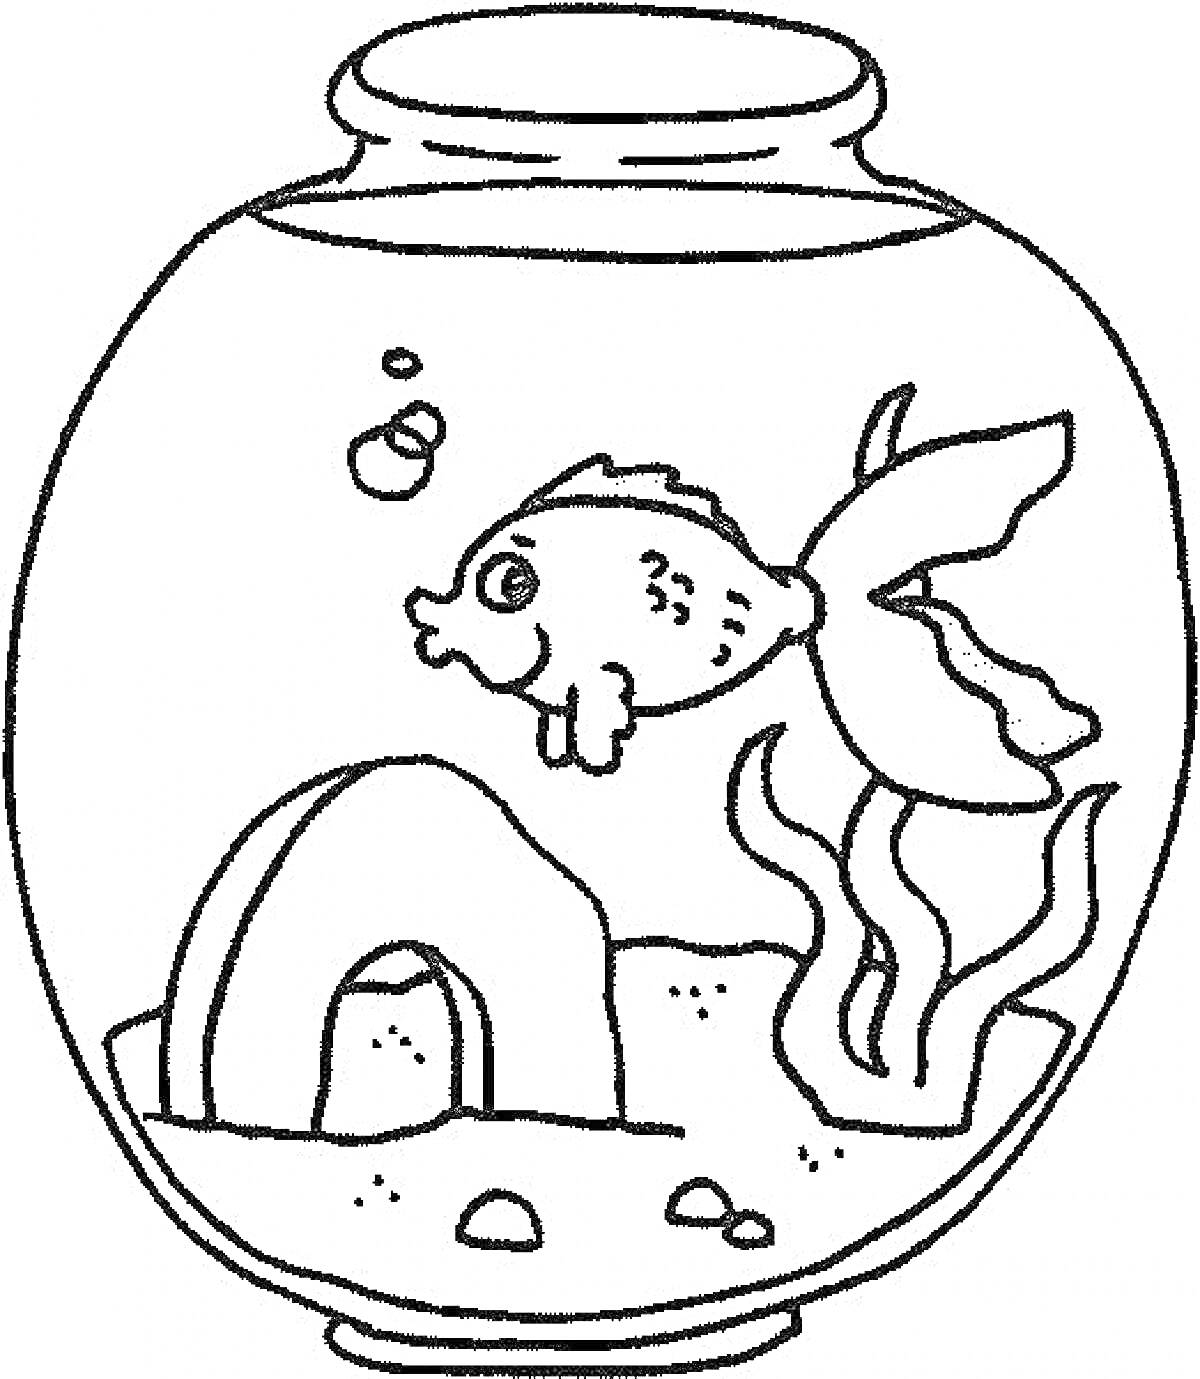 Раскраска Аквариум с рыбкой, растением, домиком и пузырями воздуха